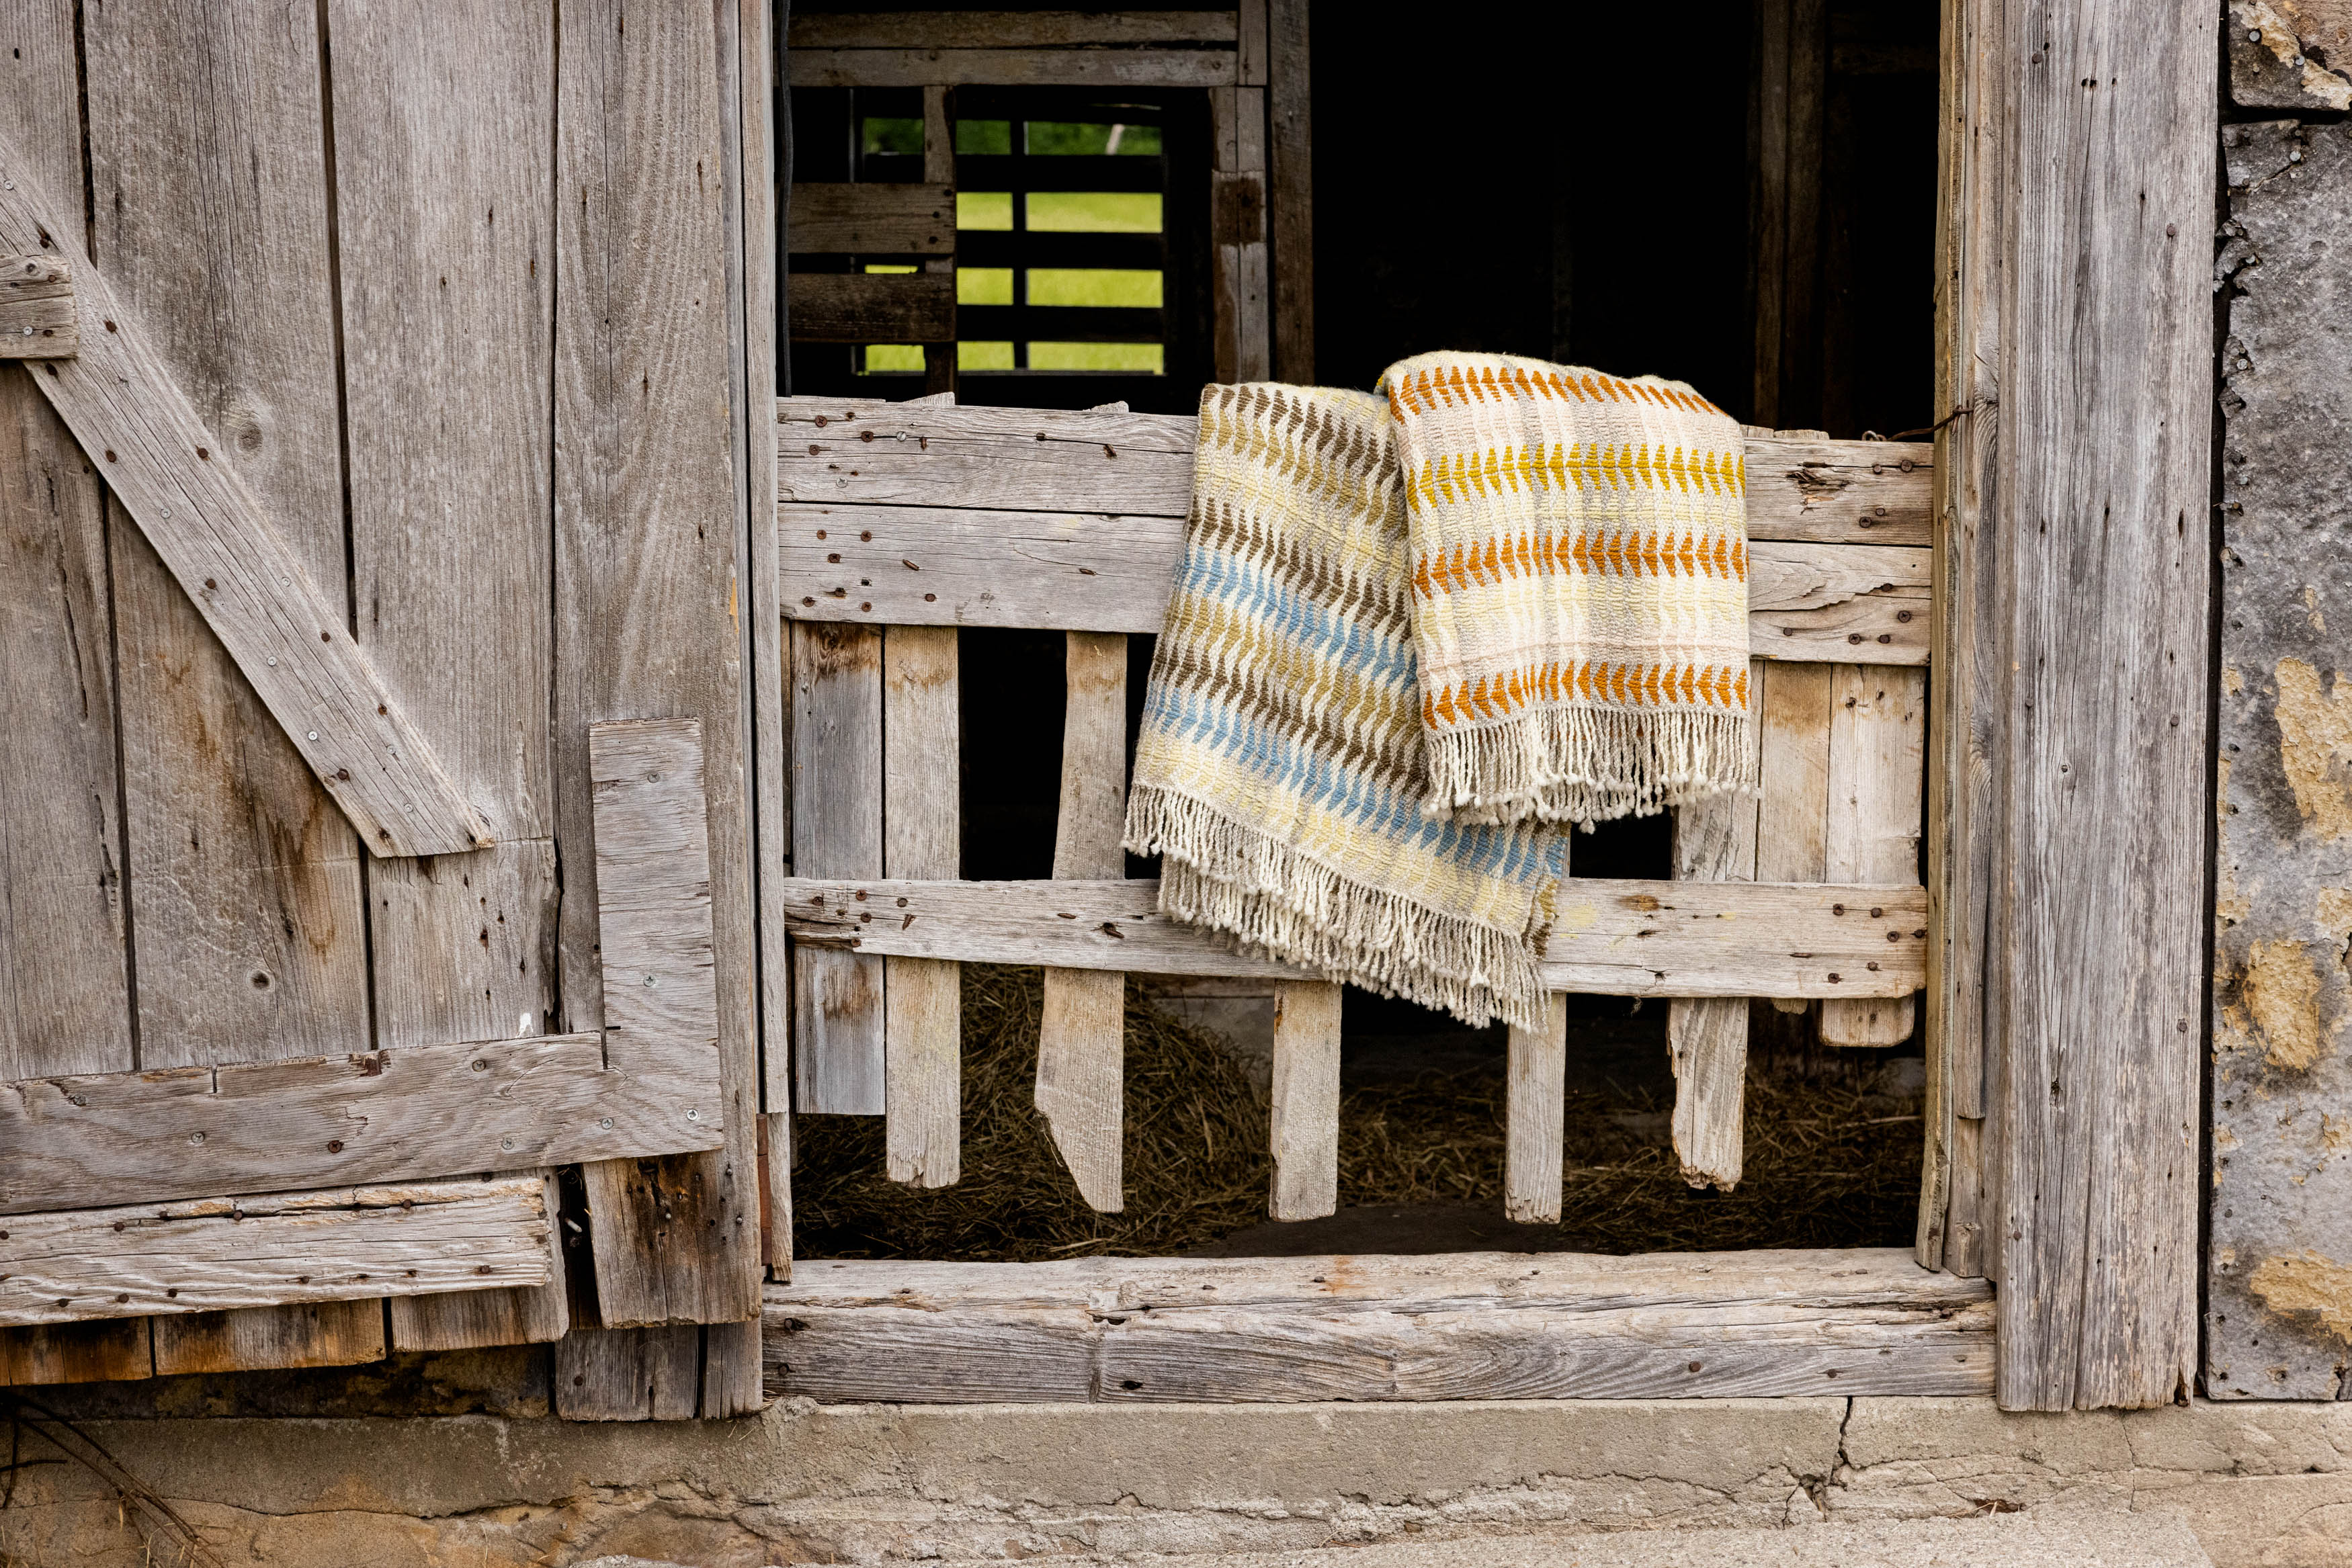 Wool blankets hanging on a barn door.